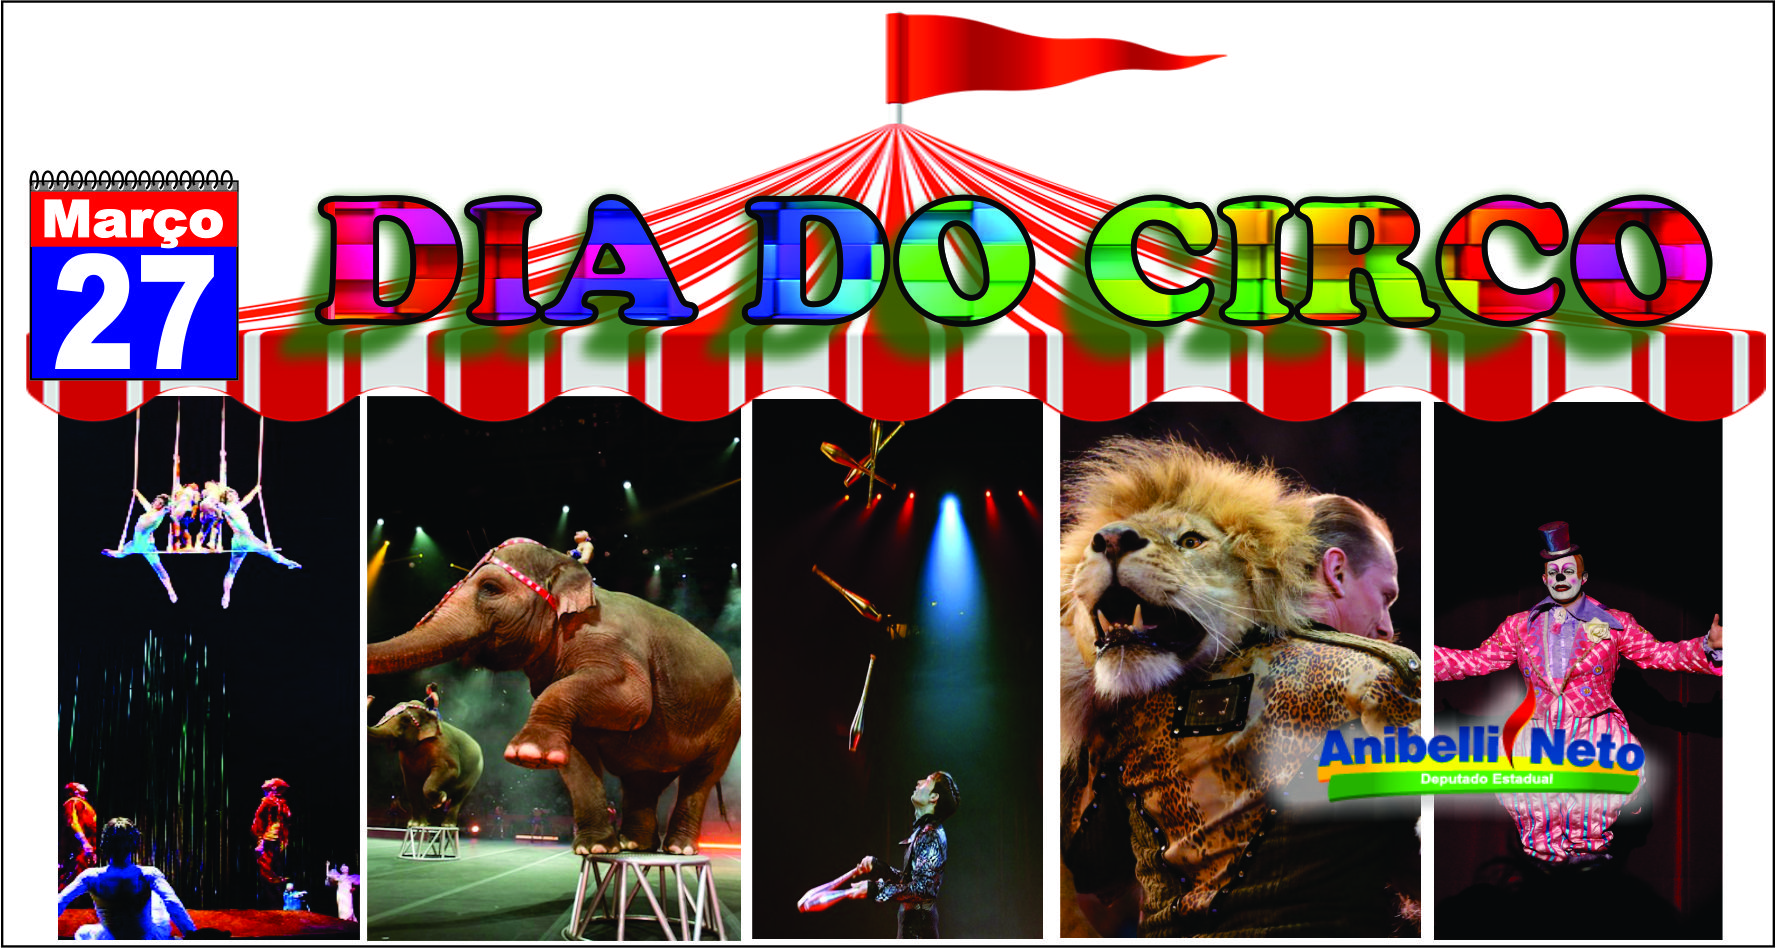 Dia do Circo